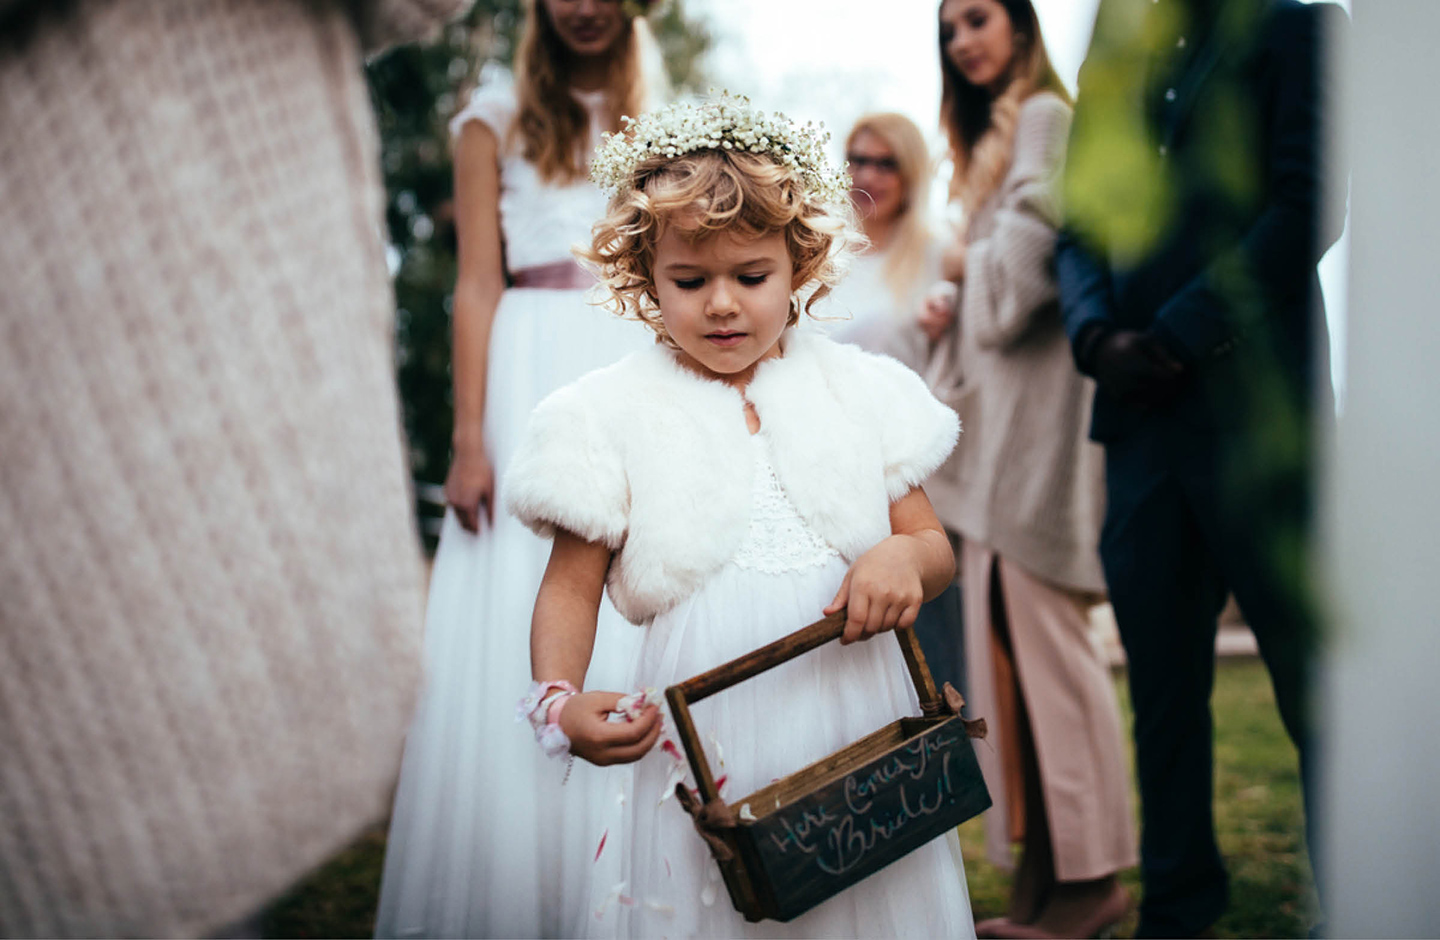 Kleines Mädchen streut Blumen auf einer Hochzeit. Sie trägt ein weißes Kleid und einen Blumenkranz auf dem Kopf. Im Hintergrund sind die Braut und die Hochzeitsgäste in Umrissen zu sehen.